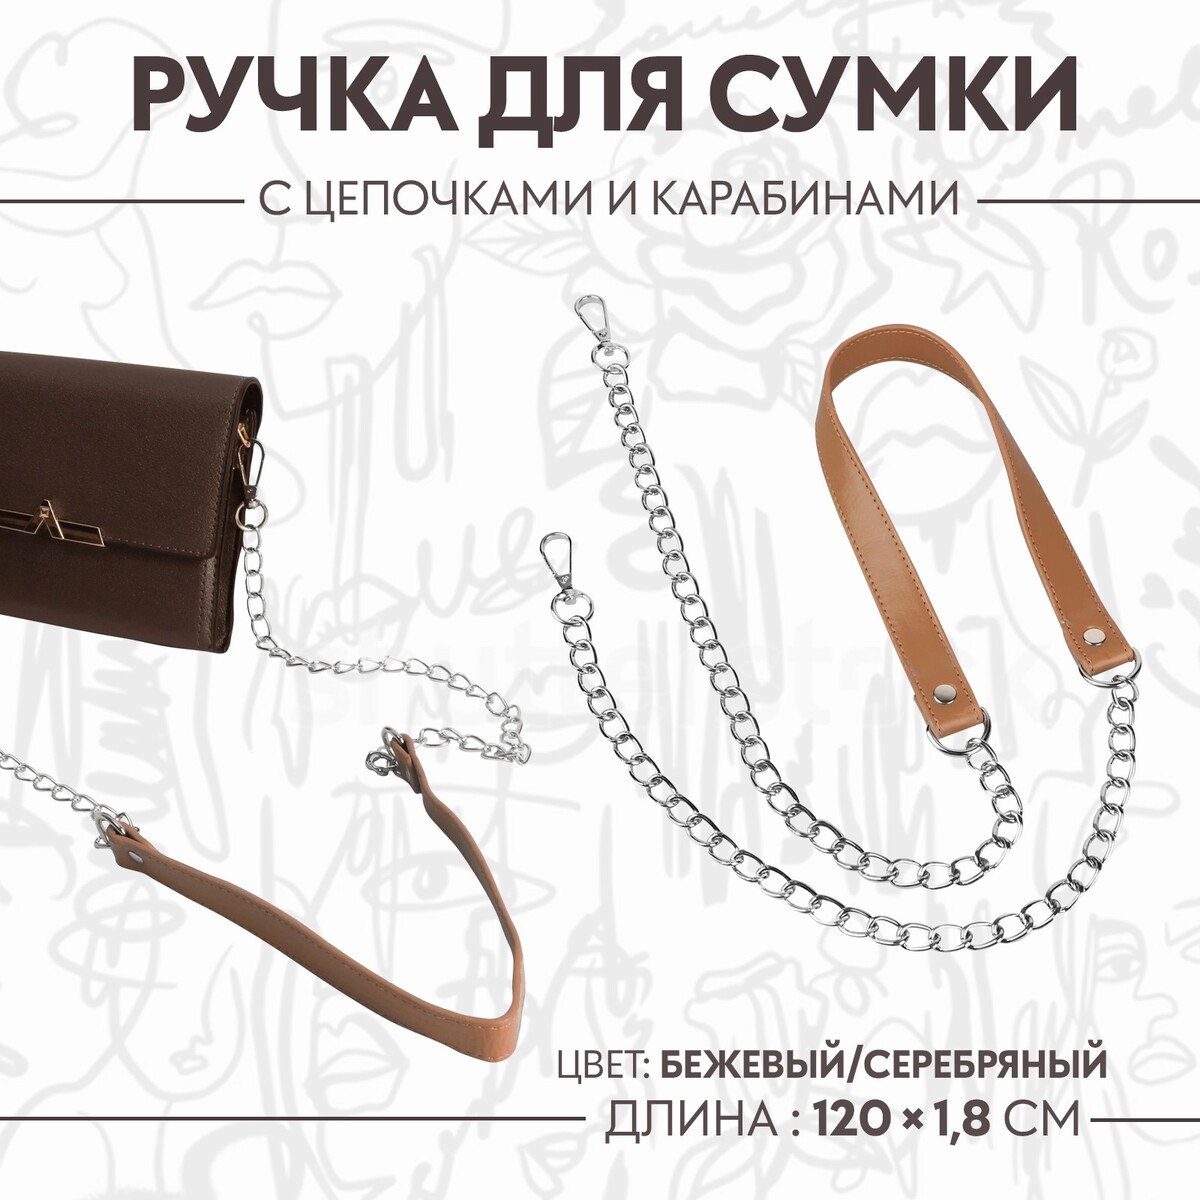 Ручка для сумки, с цепочками и карабинами, 120 × 1,8 см, цвет бежевый ручка для сумки с цепочками и карабинами 120 × 1 8 см бордовый